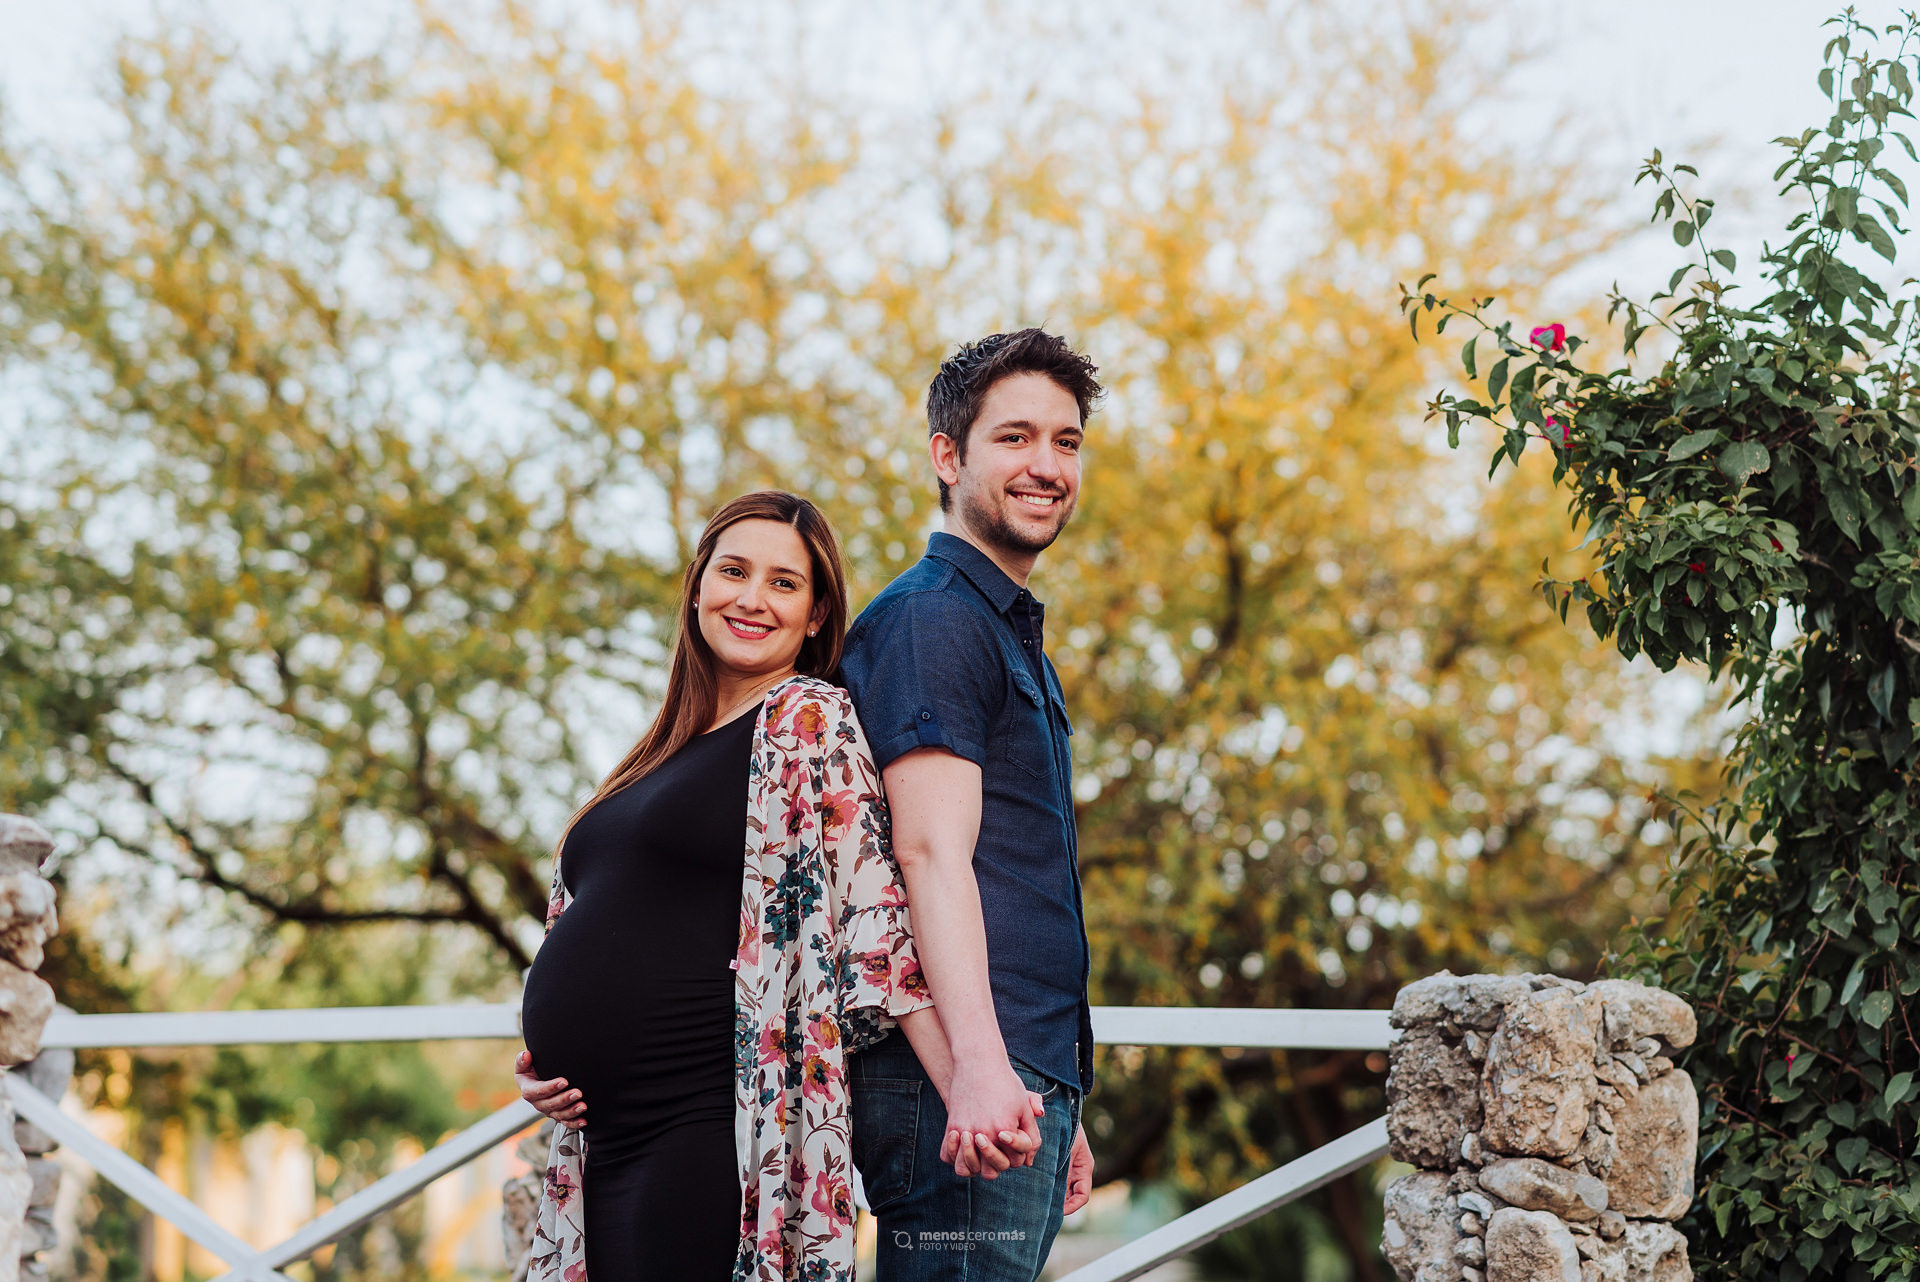 Susy y su esposo, unidos por el amor y la esperanza, se toman de la mano en un puente del Parque Cumbres Elite Sec. Hacienda durante su sesión prenatal.